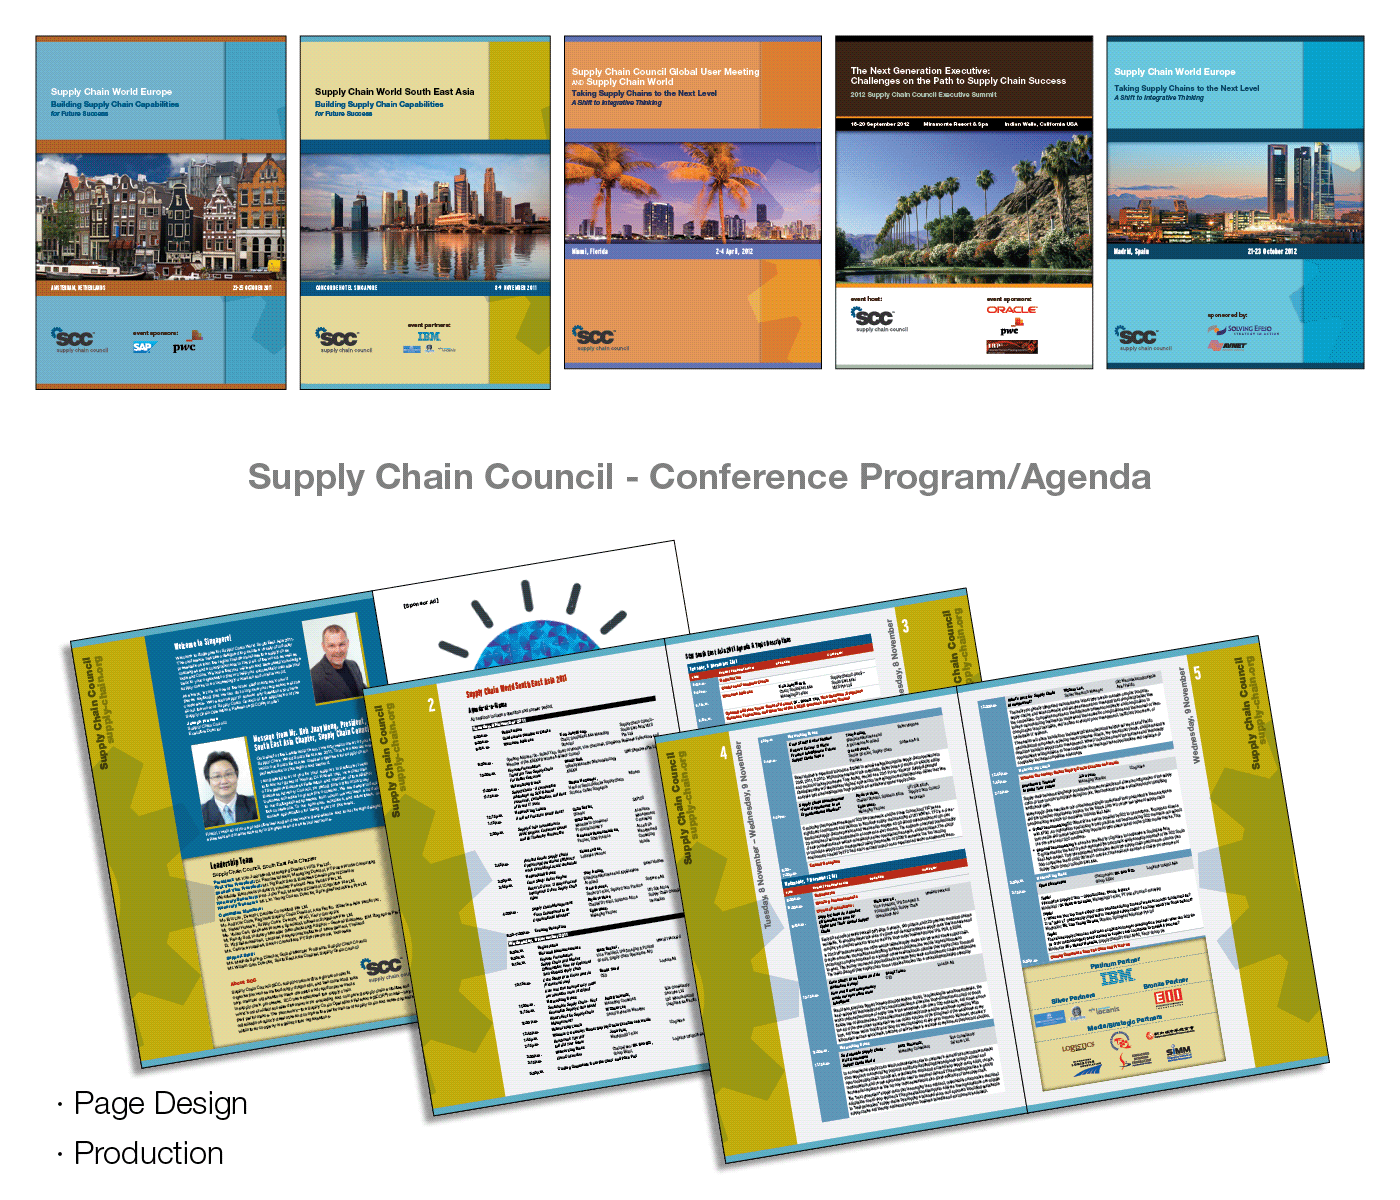 technical brochures Packaging Litigation graphics Pocket Folders brochures book design